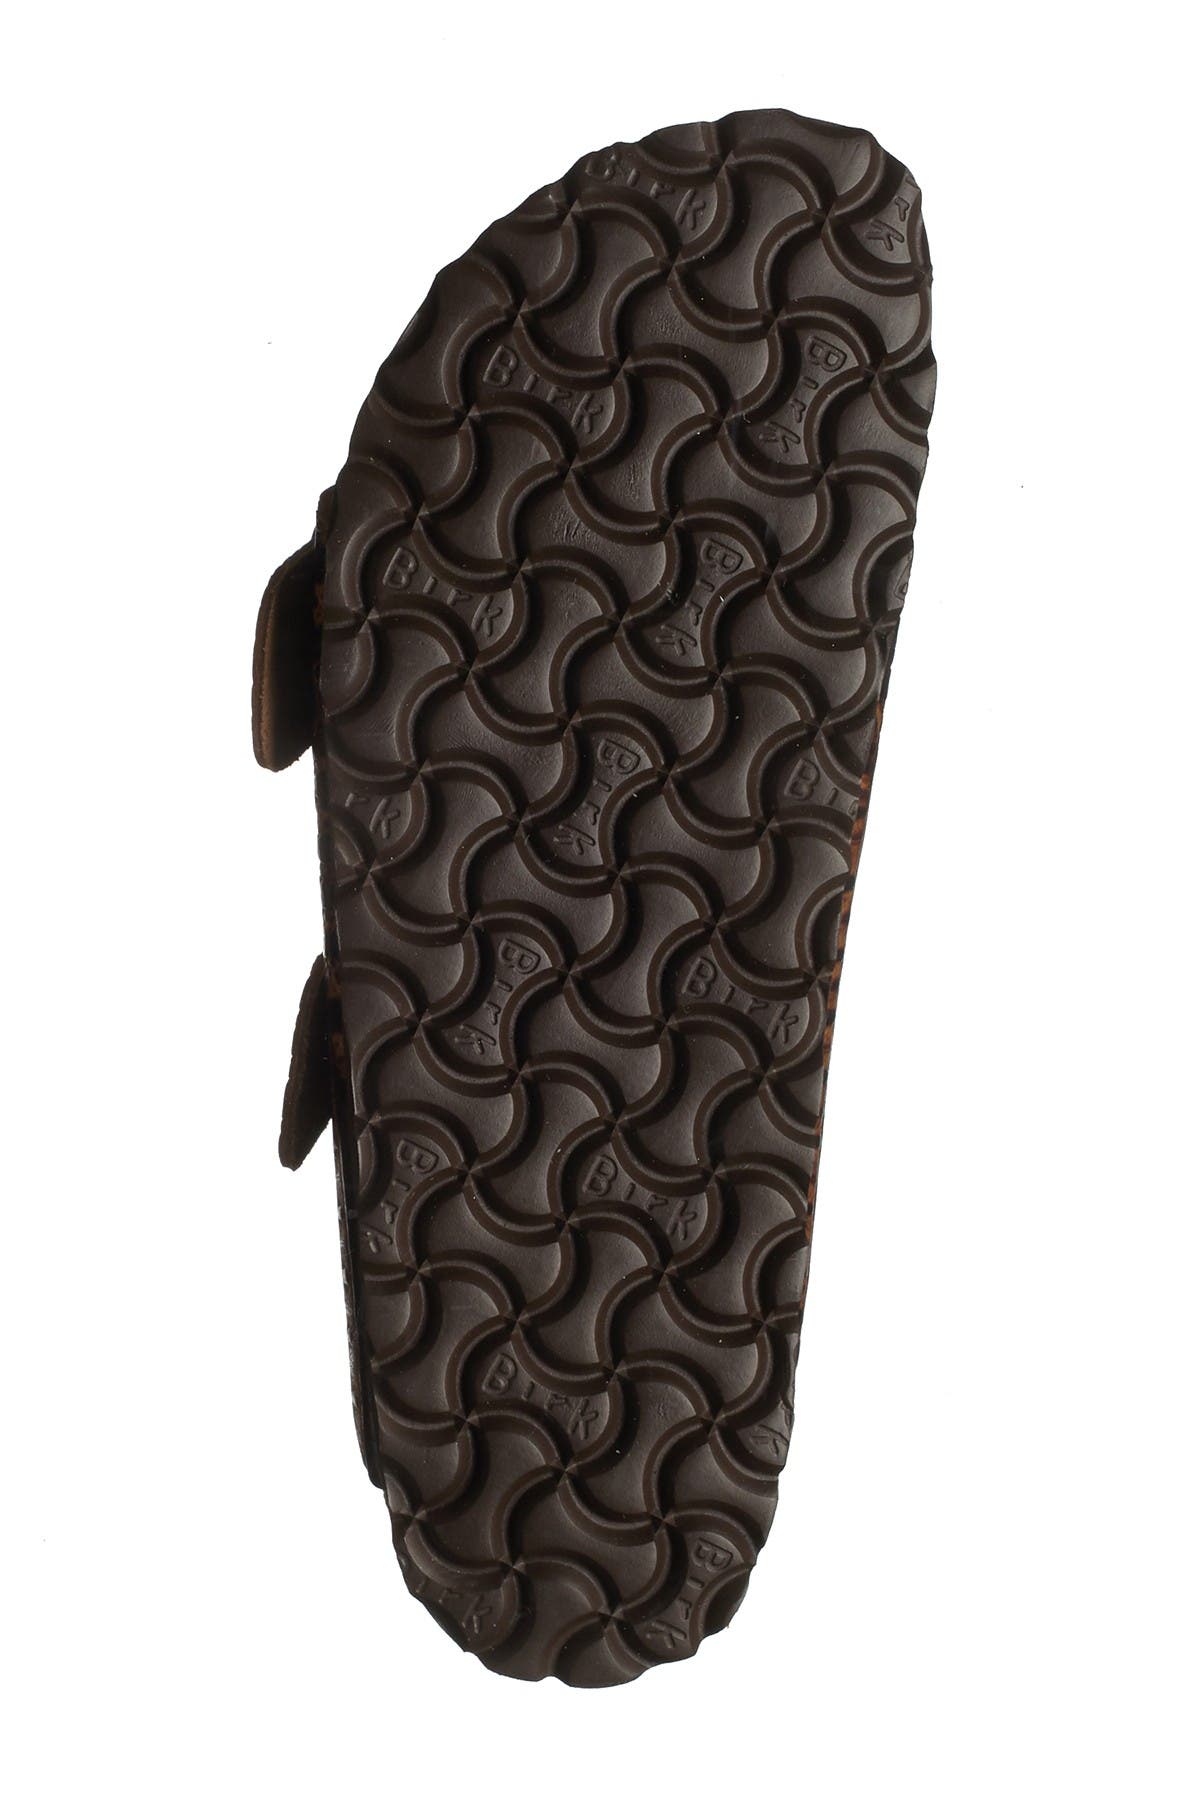 Birkenstock | Arizona Croc-Embossed Leather Slide Sandal - Discontinued ...